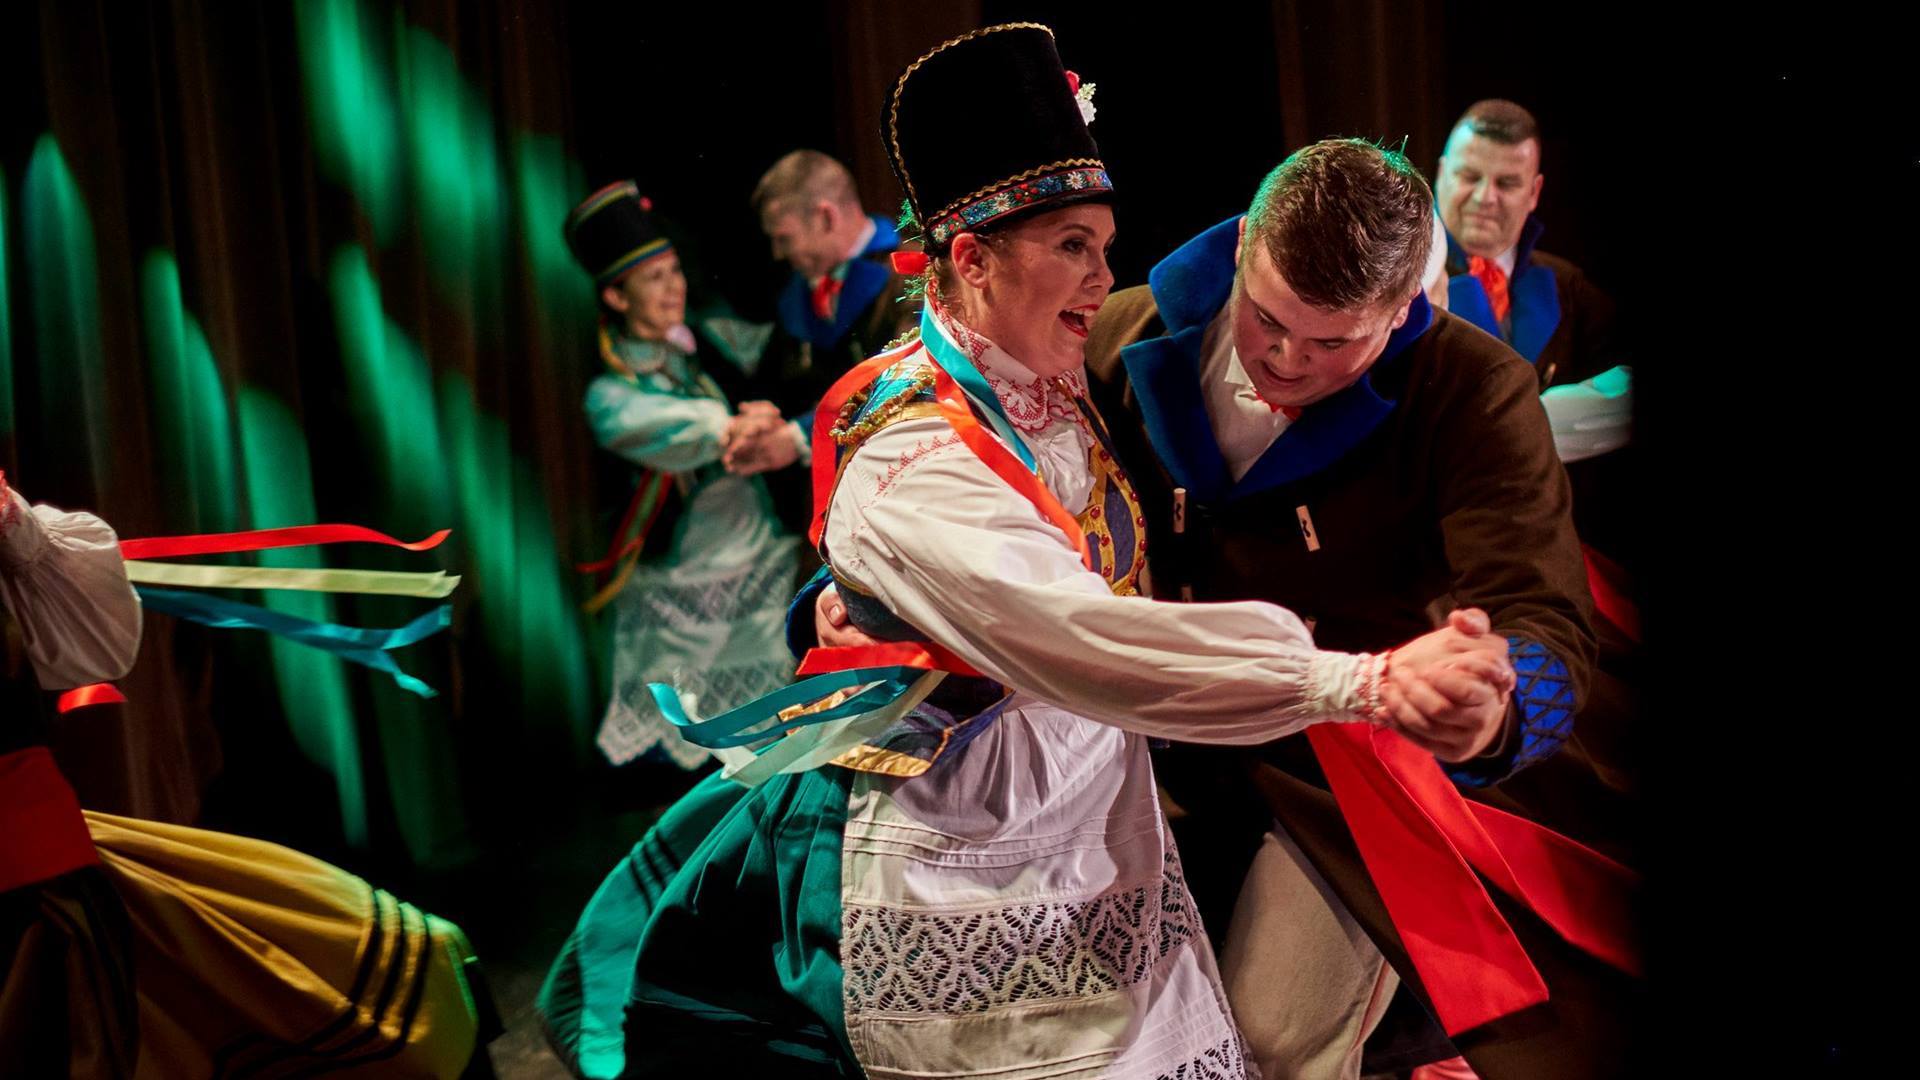 W Łomży każdy może nauczyć się tańca ludowego, źródło: Projekt Meandry